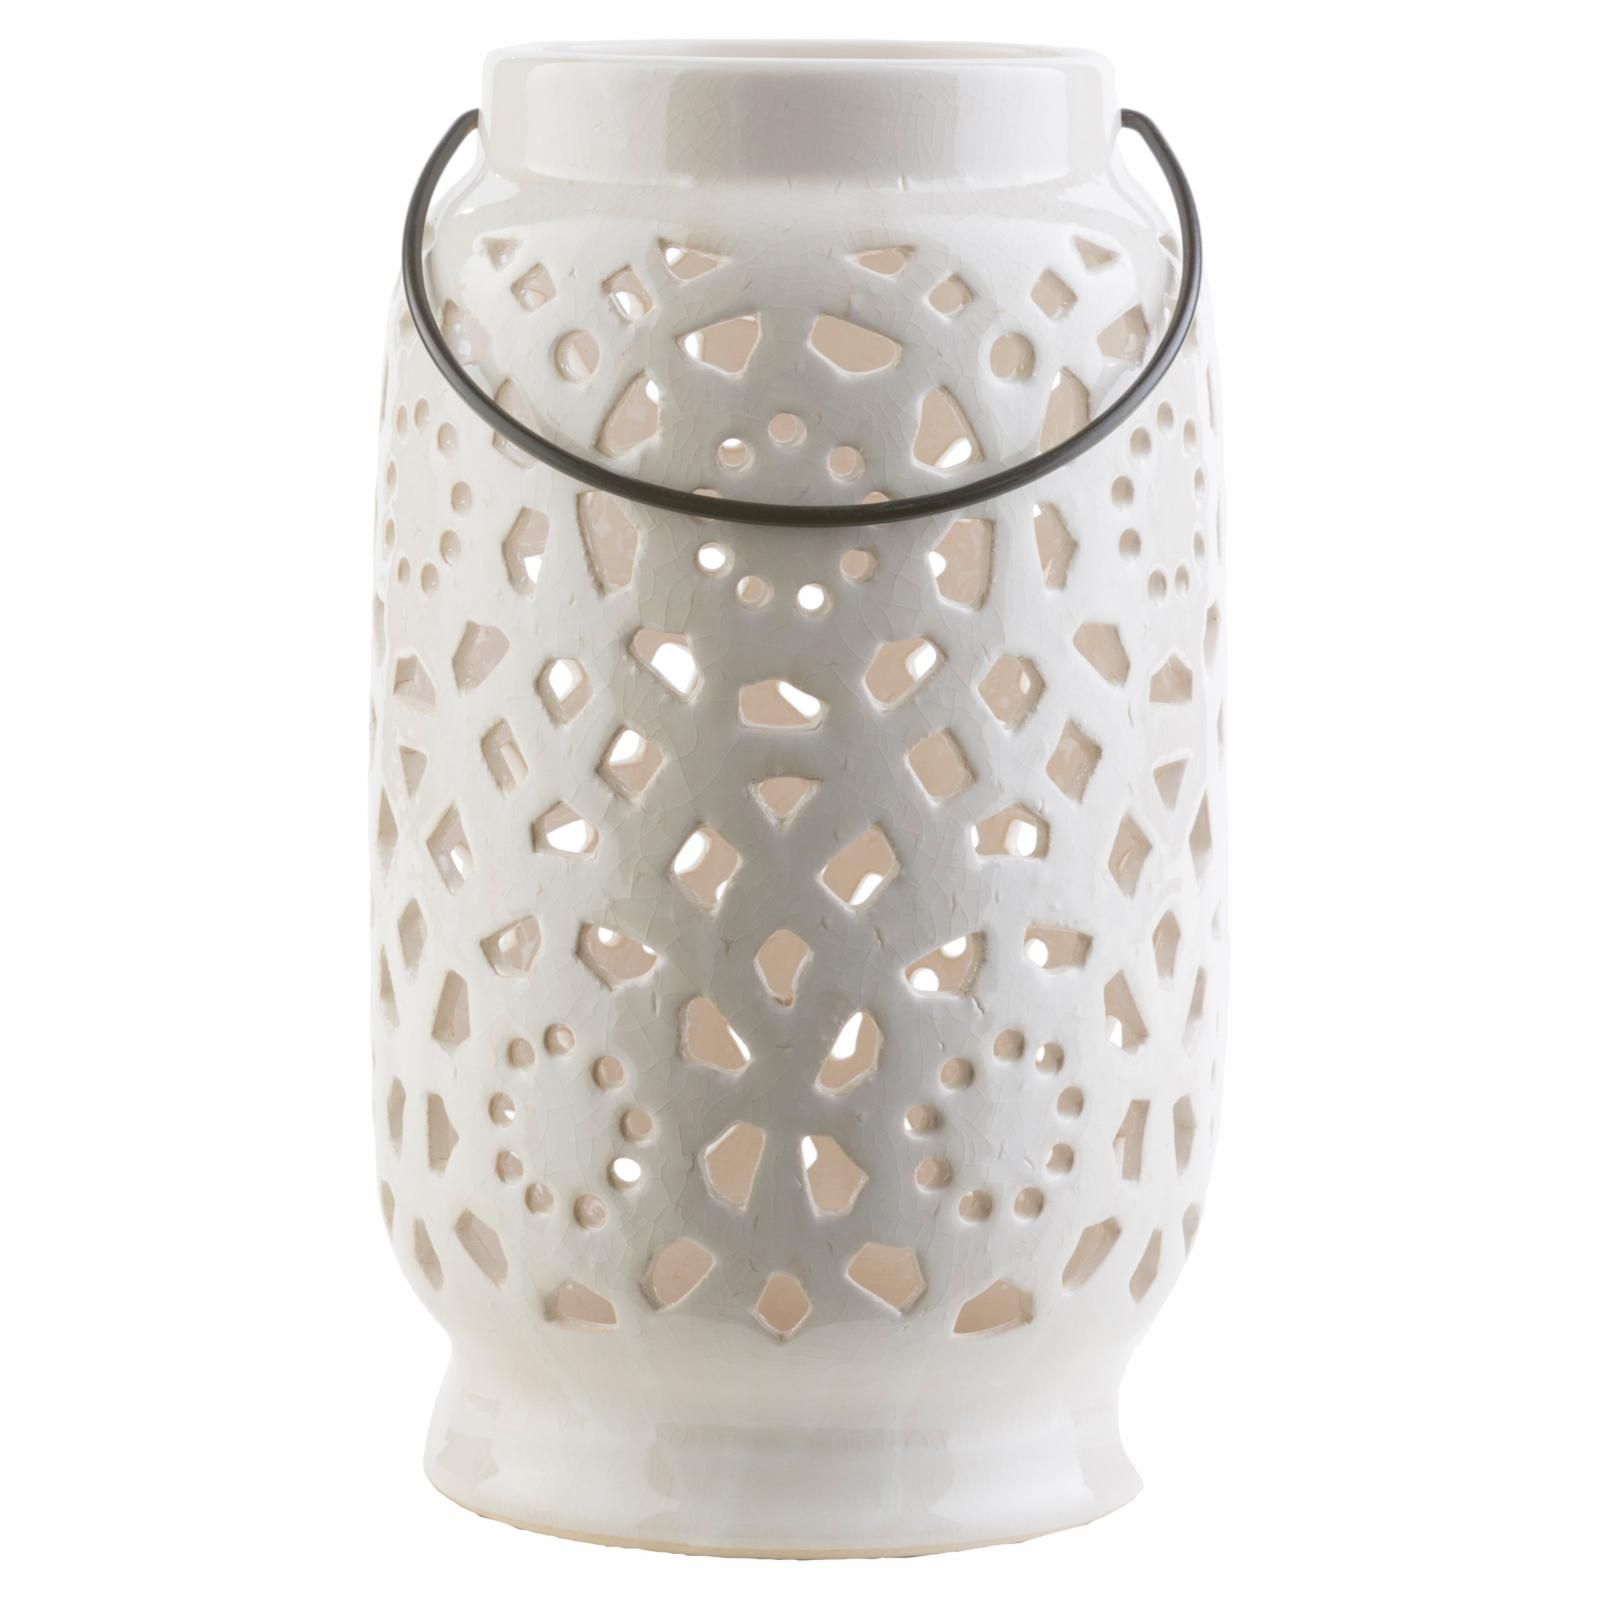 Surya Avery Ceramic Lantern Ivory | Hayneedle